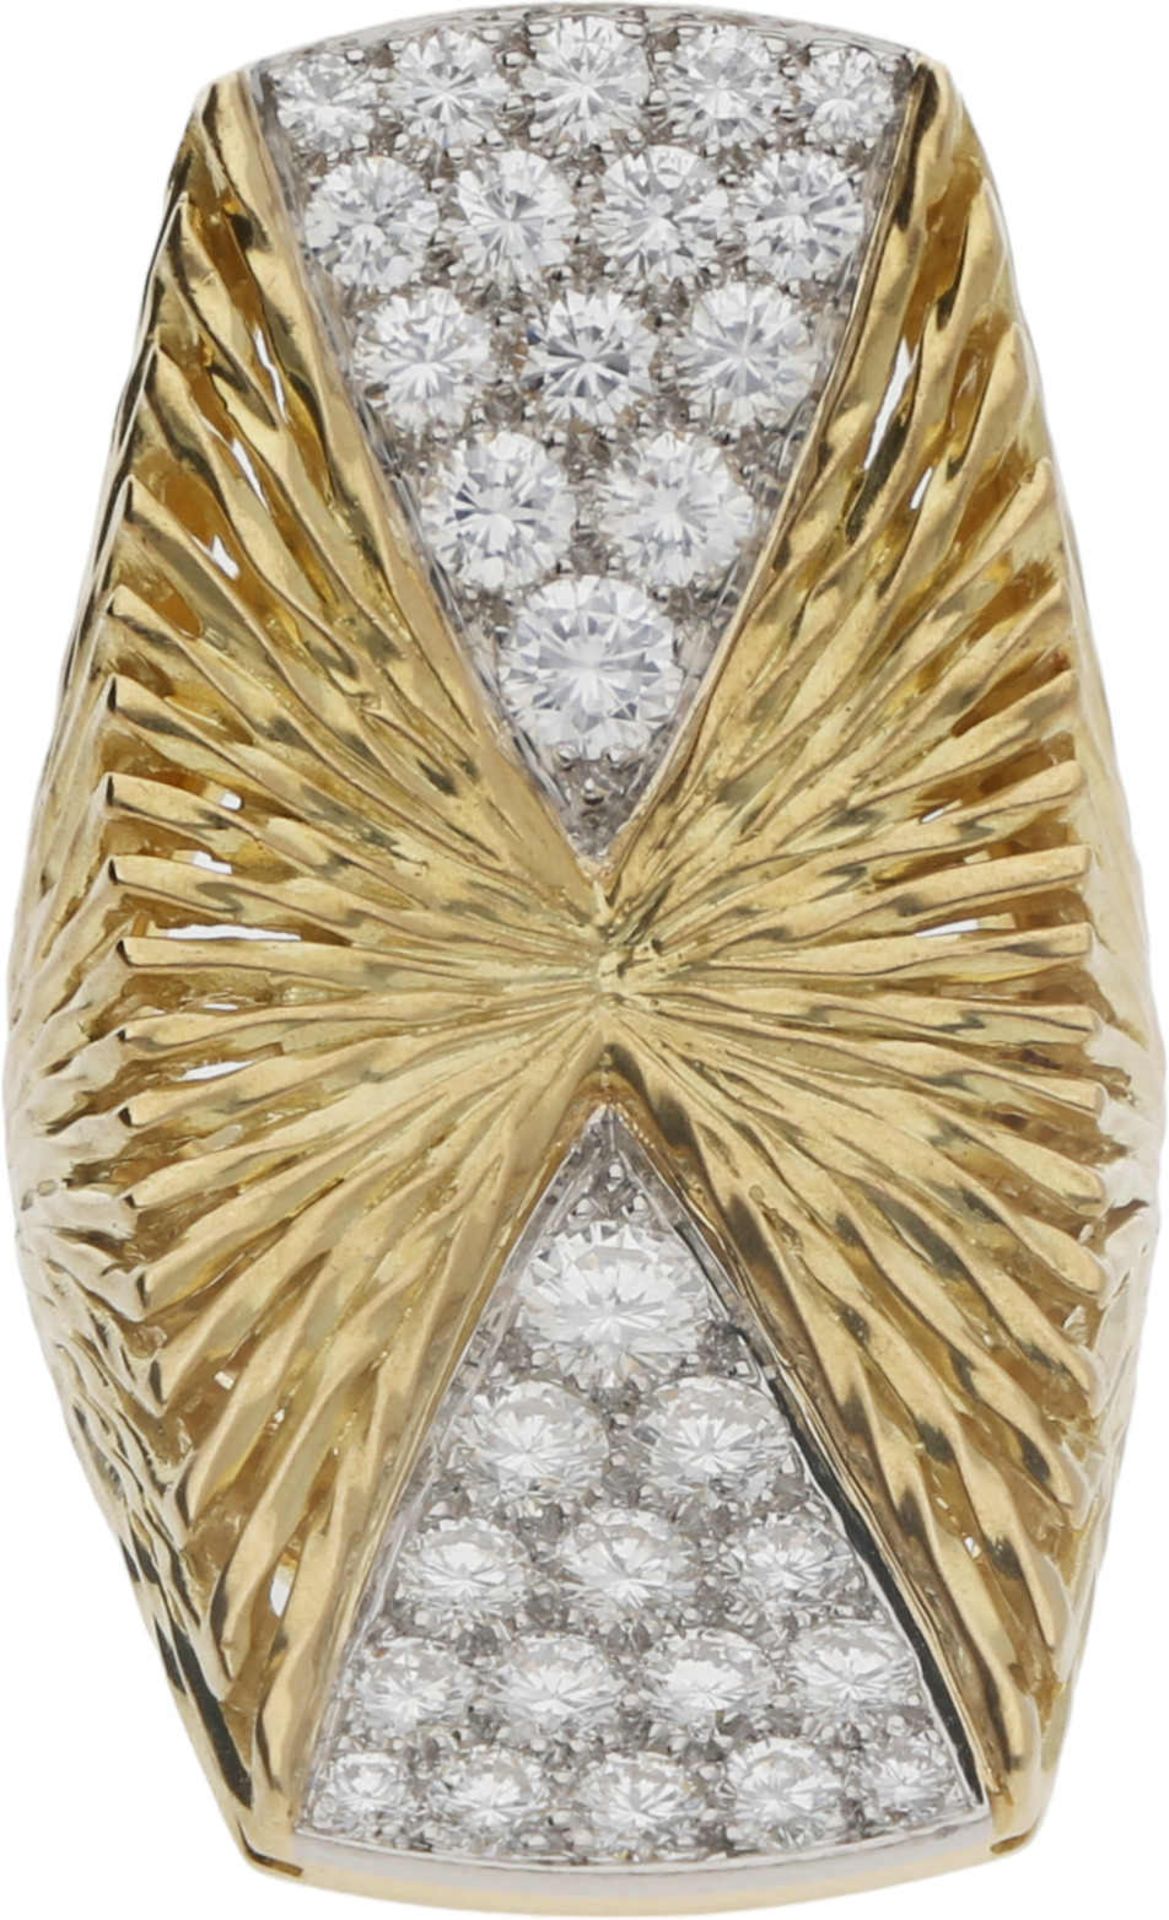 Piaget-Ring Extravaganter Piaget-Ring in Gelbgold/Weissgold 18K mit feinsten Brillanten von zus. ca.